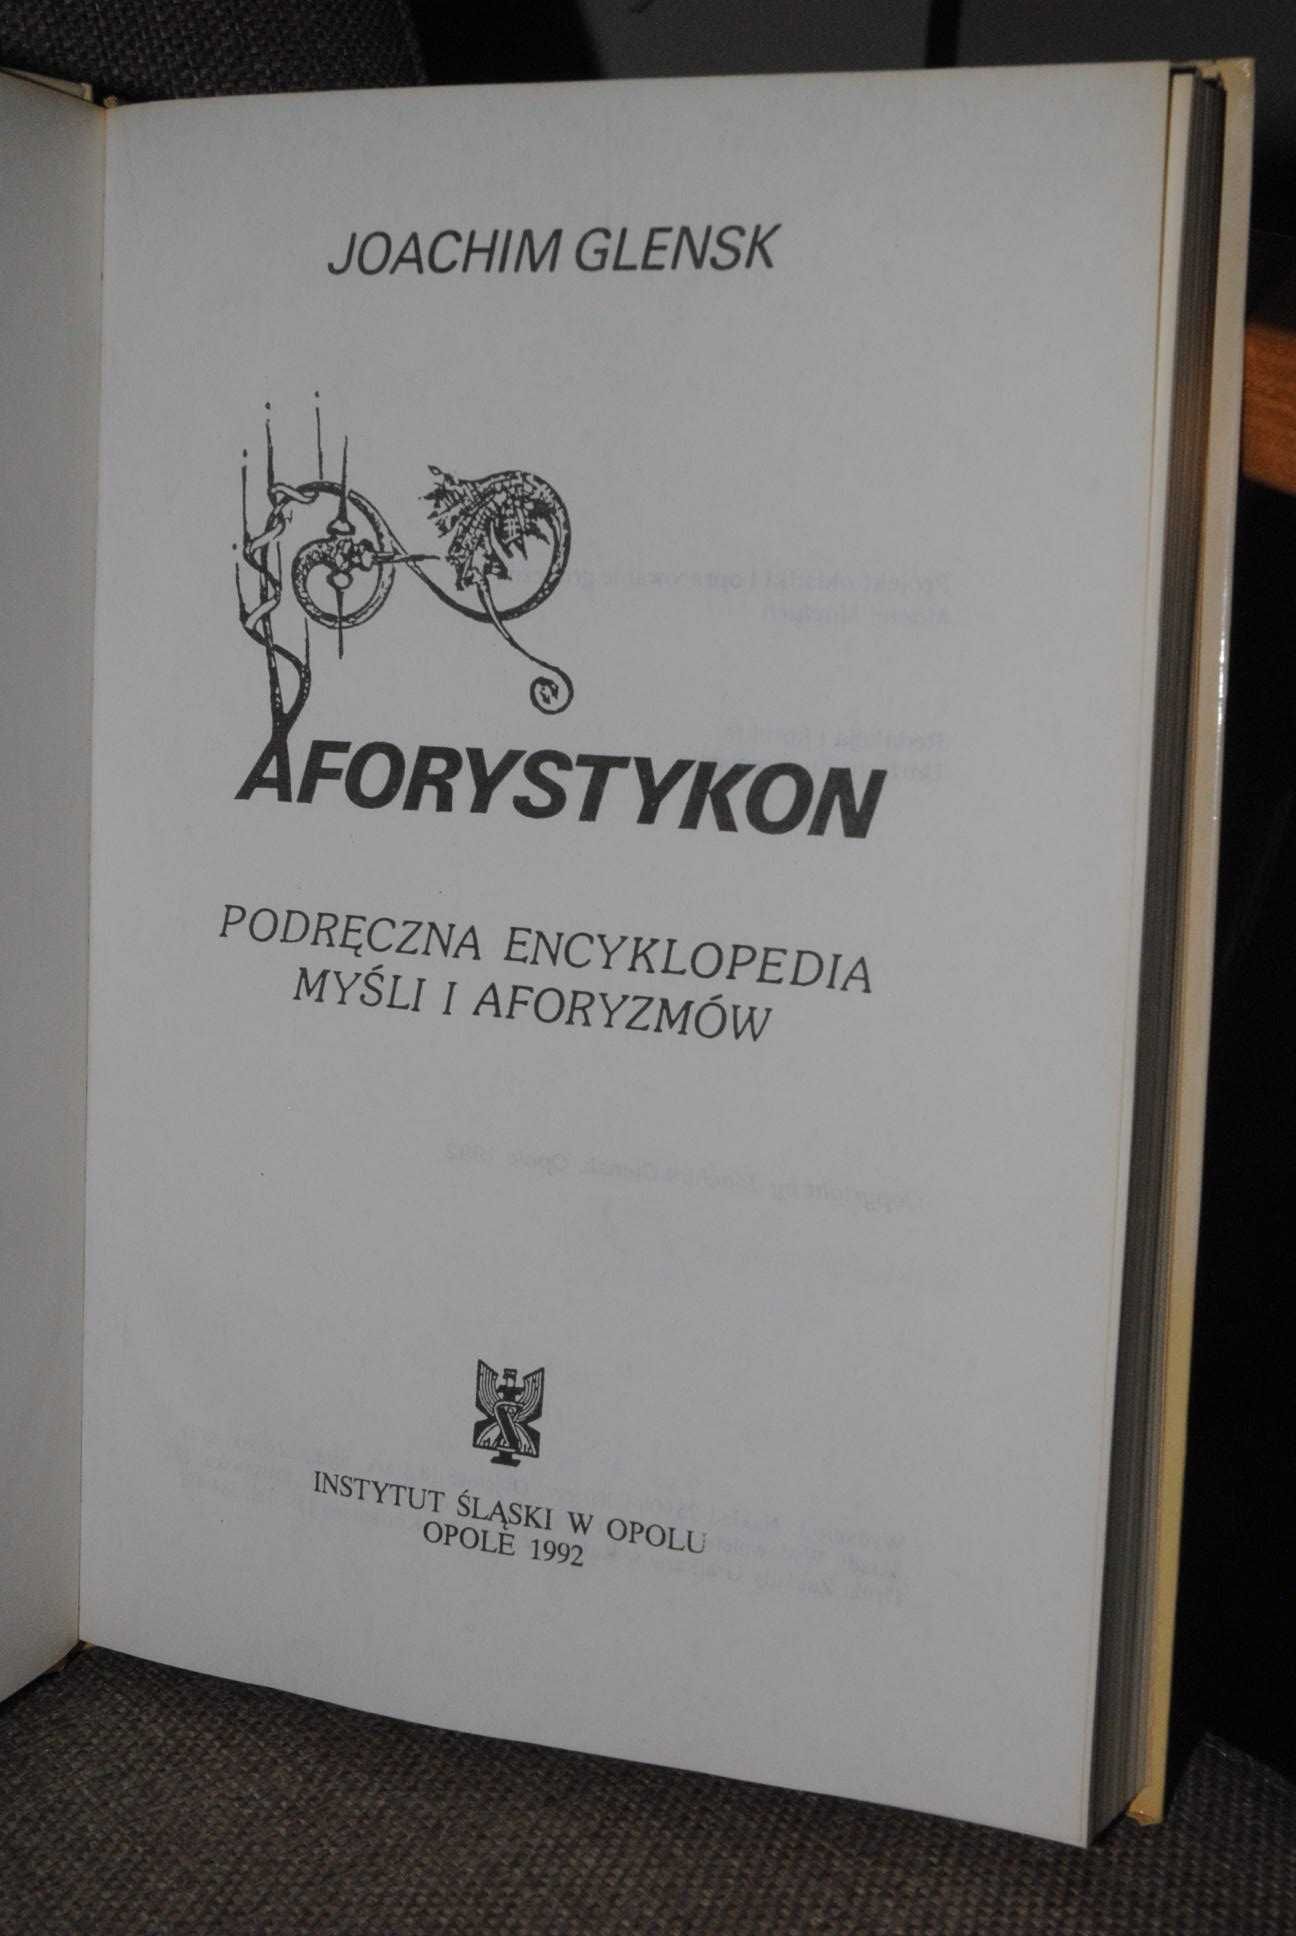 Aforystykon - Podreczna encyklopedia myśli i aforyzmów - J.Glensk